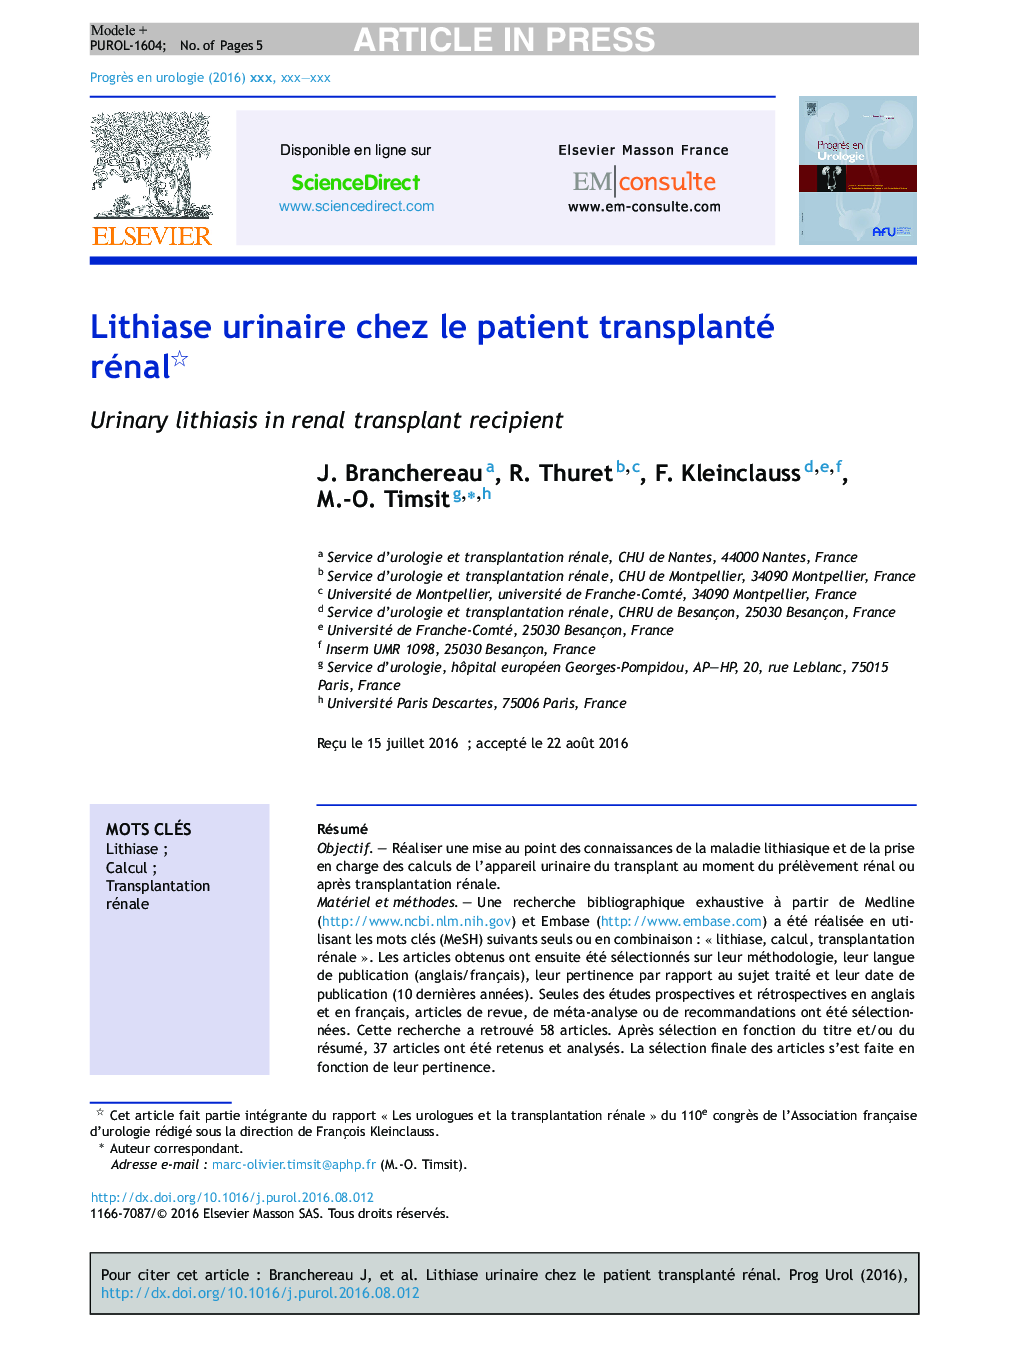 Lithiase urinaire chez le patient transplanté rénal